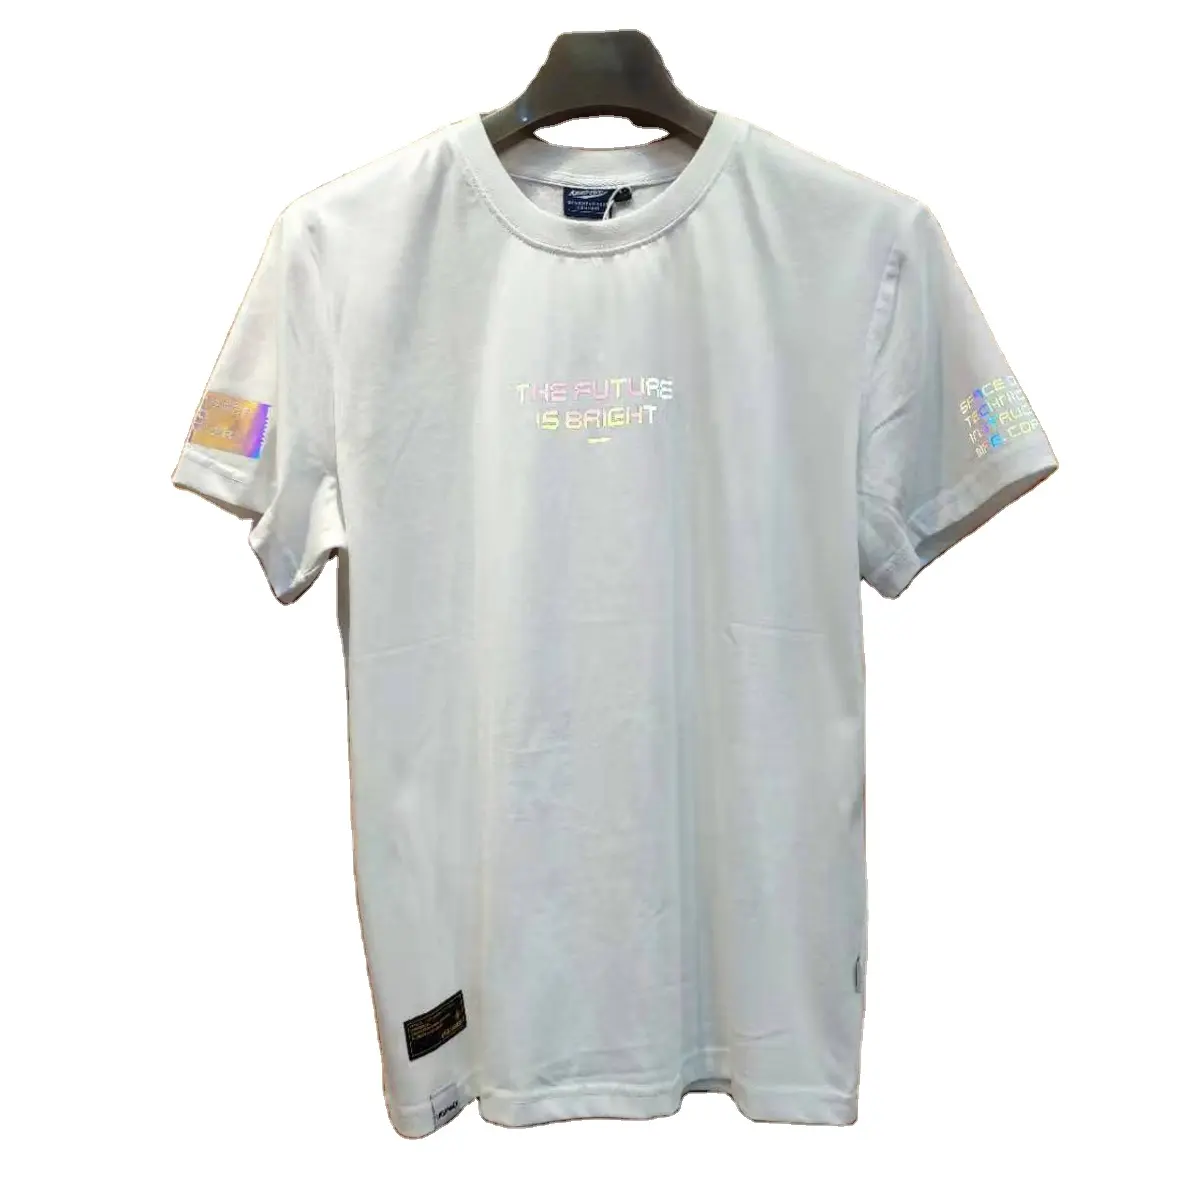 Китайские производители товаров, 100 хлопок, г/кв. М, светоотражающая красочная футболка с коротким рукавом и лазерным принтом, рубашки с коротким рукавом большого размера